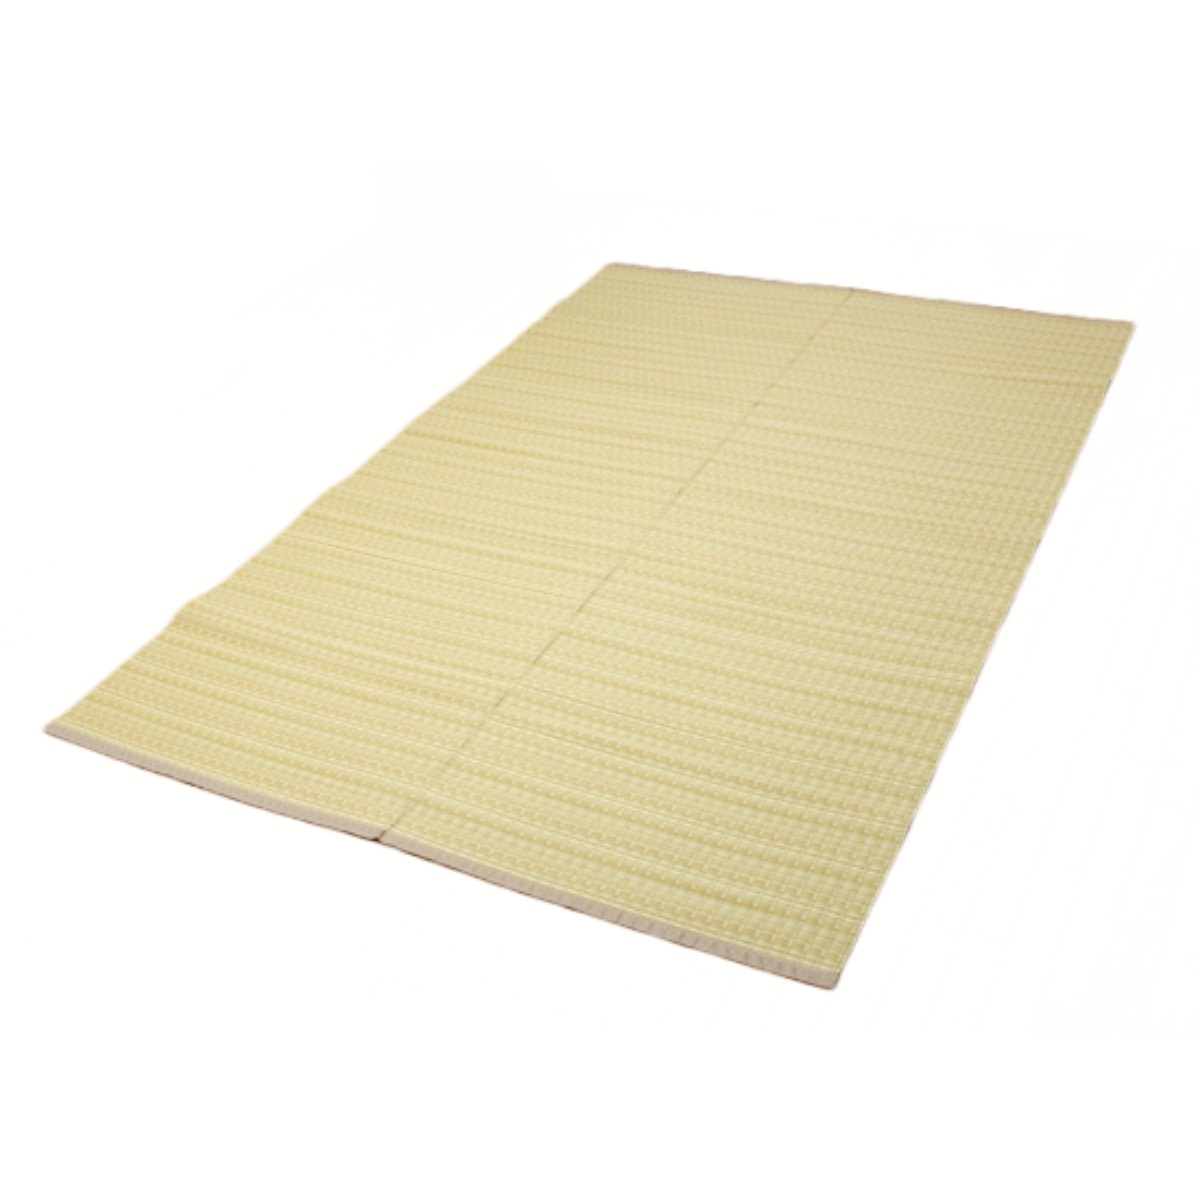 カーペット い草風 洗える PPカーペット バルカン 本間8畳 約382×382cm